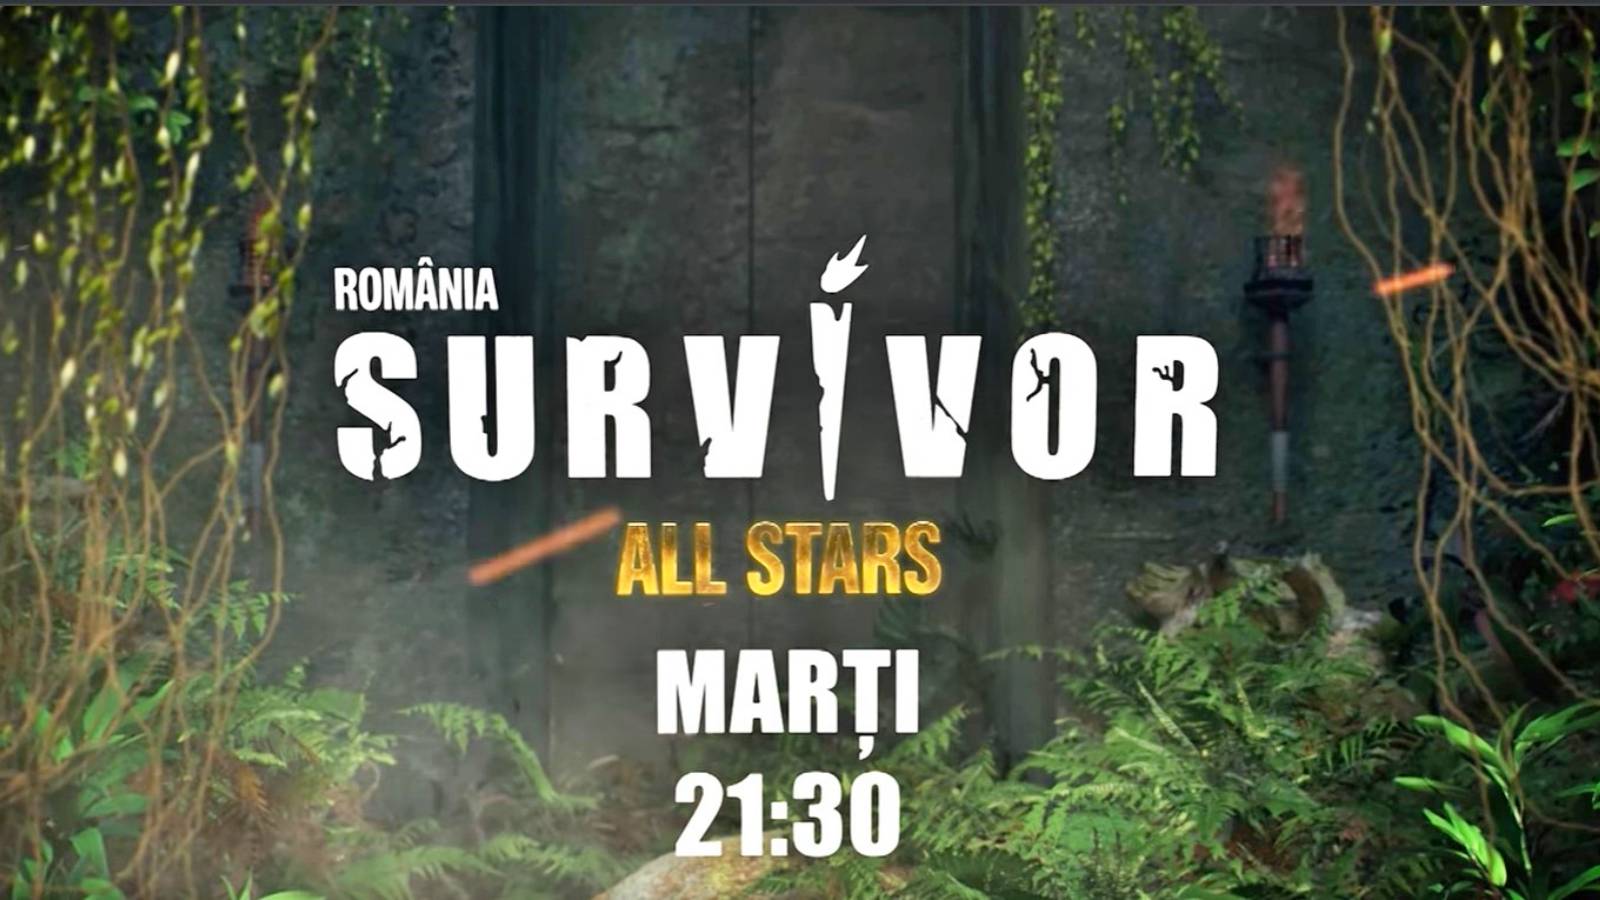 Ankündigungen von Survivor All Stars LAST MOMENT PRO TV-Problemwettbewerbe